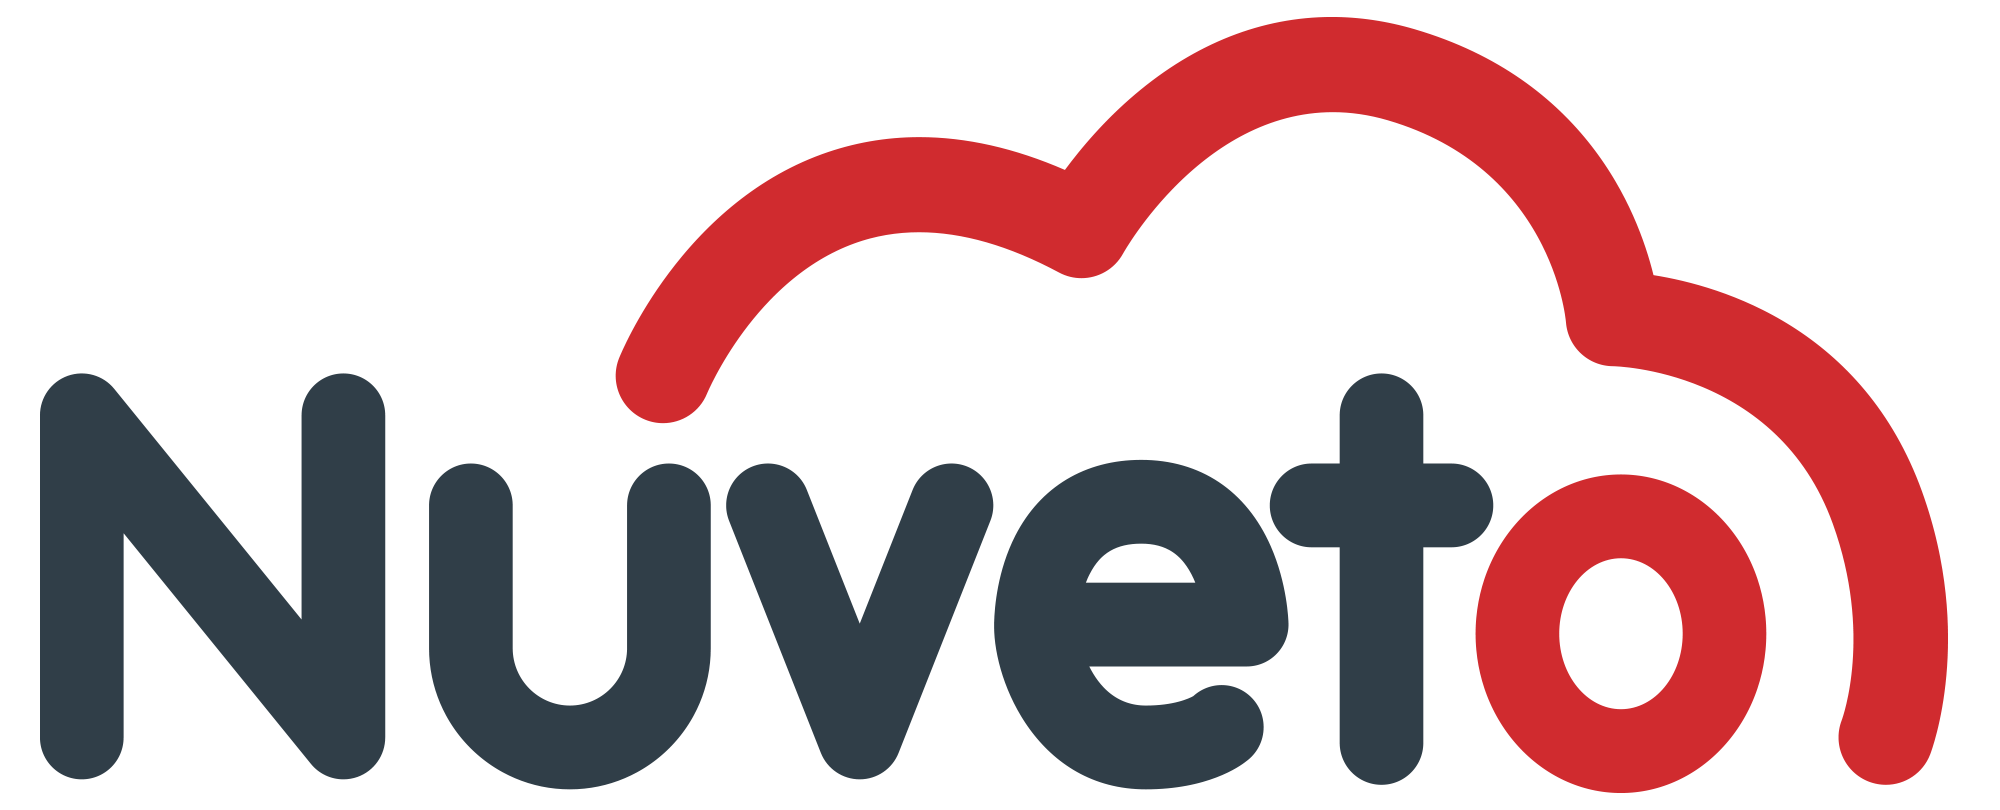 Nuveto_logo